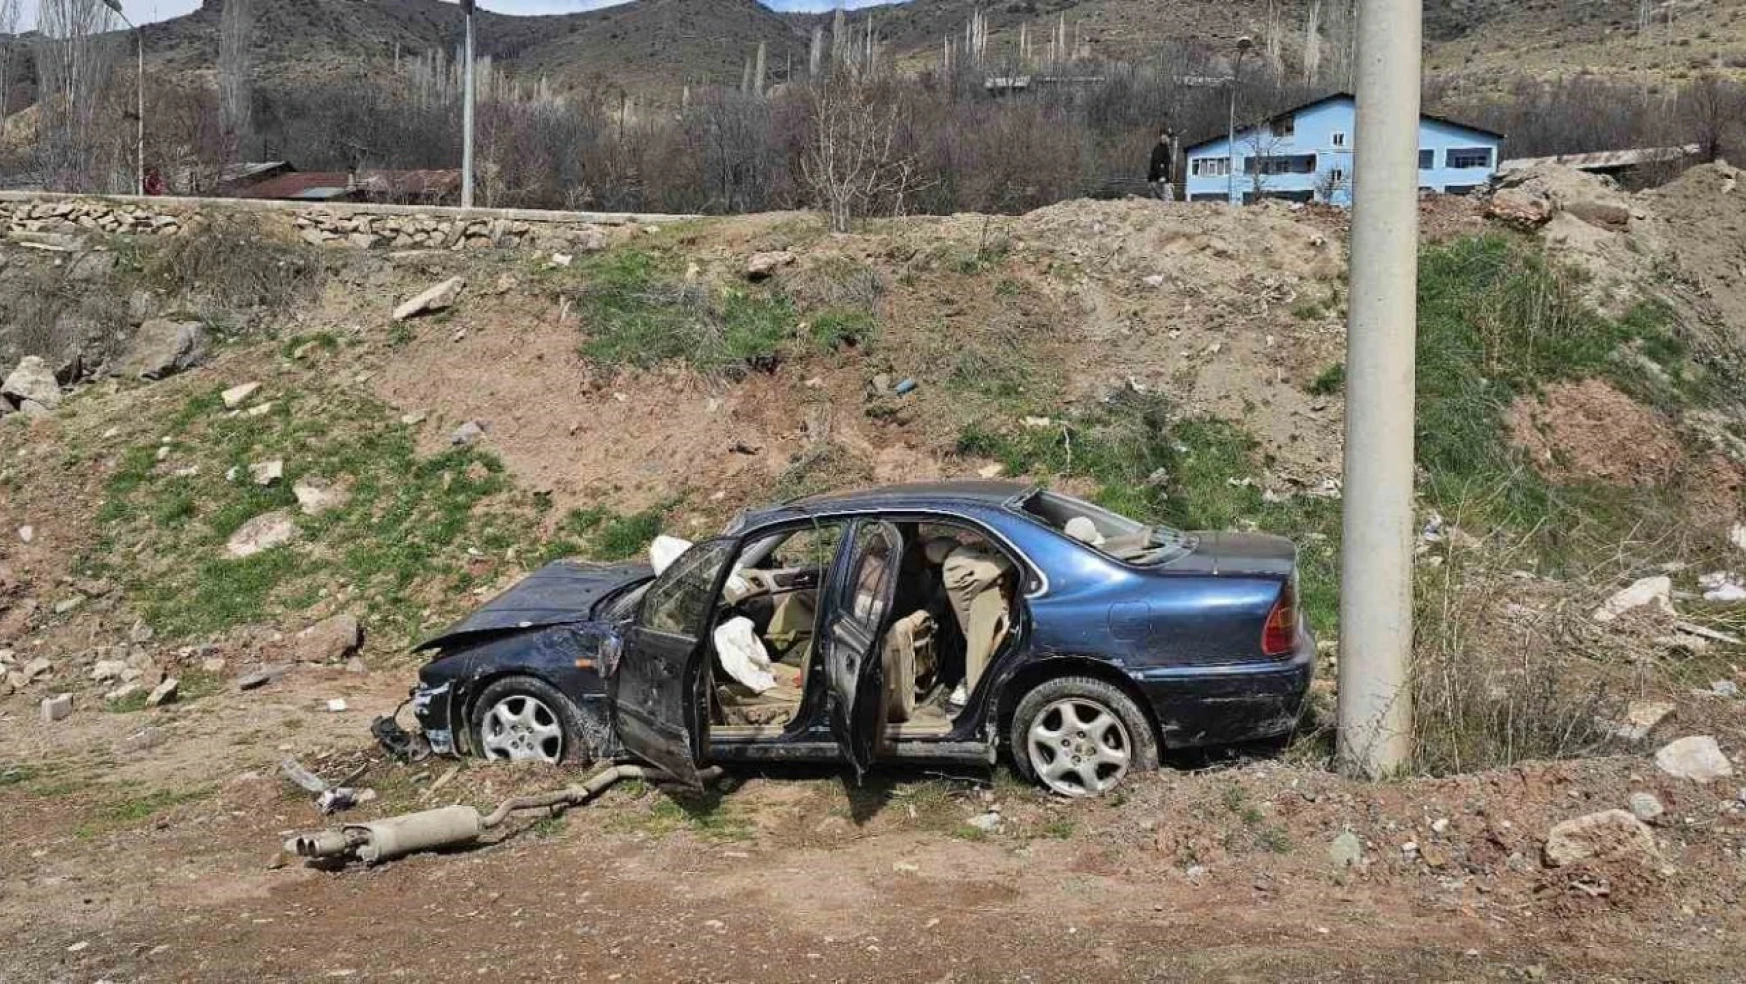 İspir'de feci kaza: 1 ölü